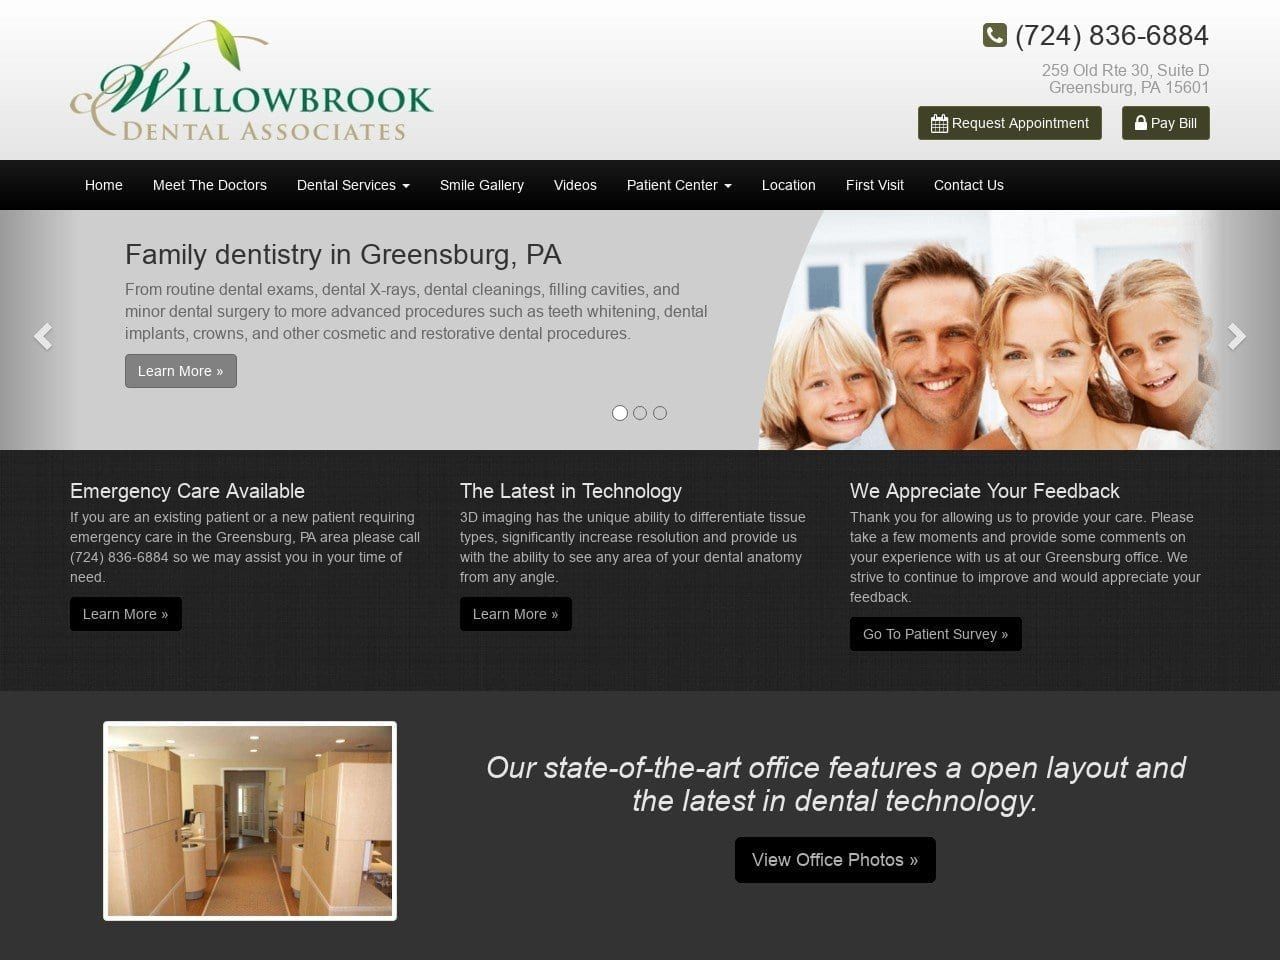 Willowbrook Dental Associates Website Screenshot from wbdental.net